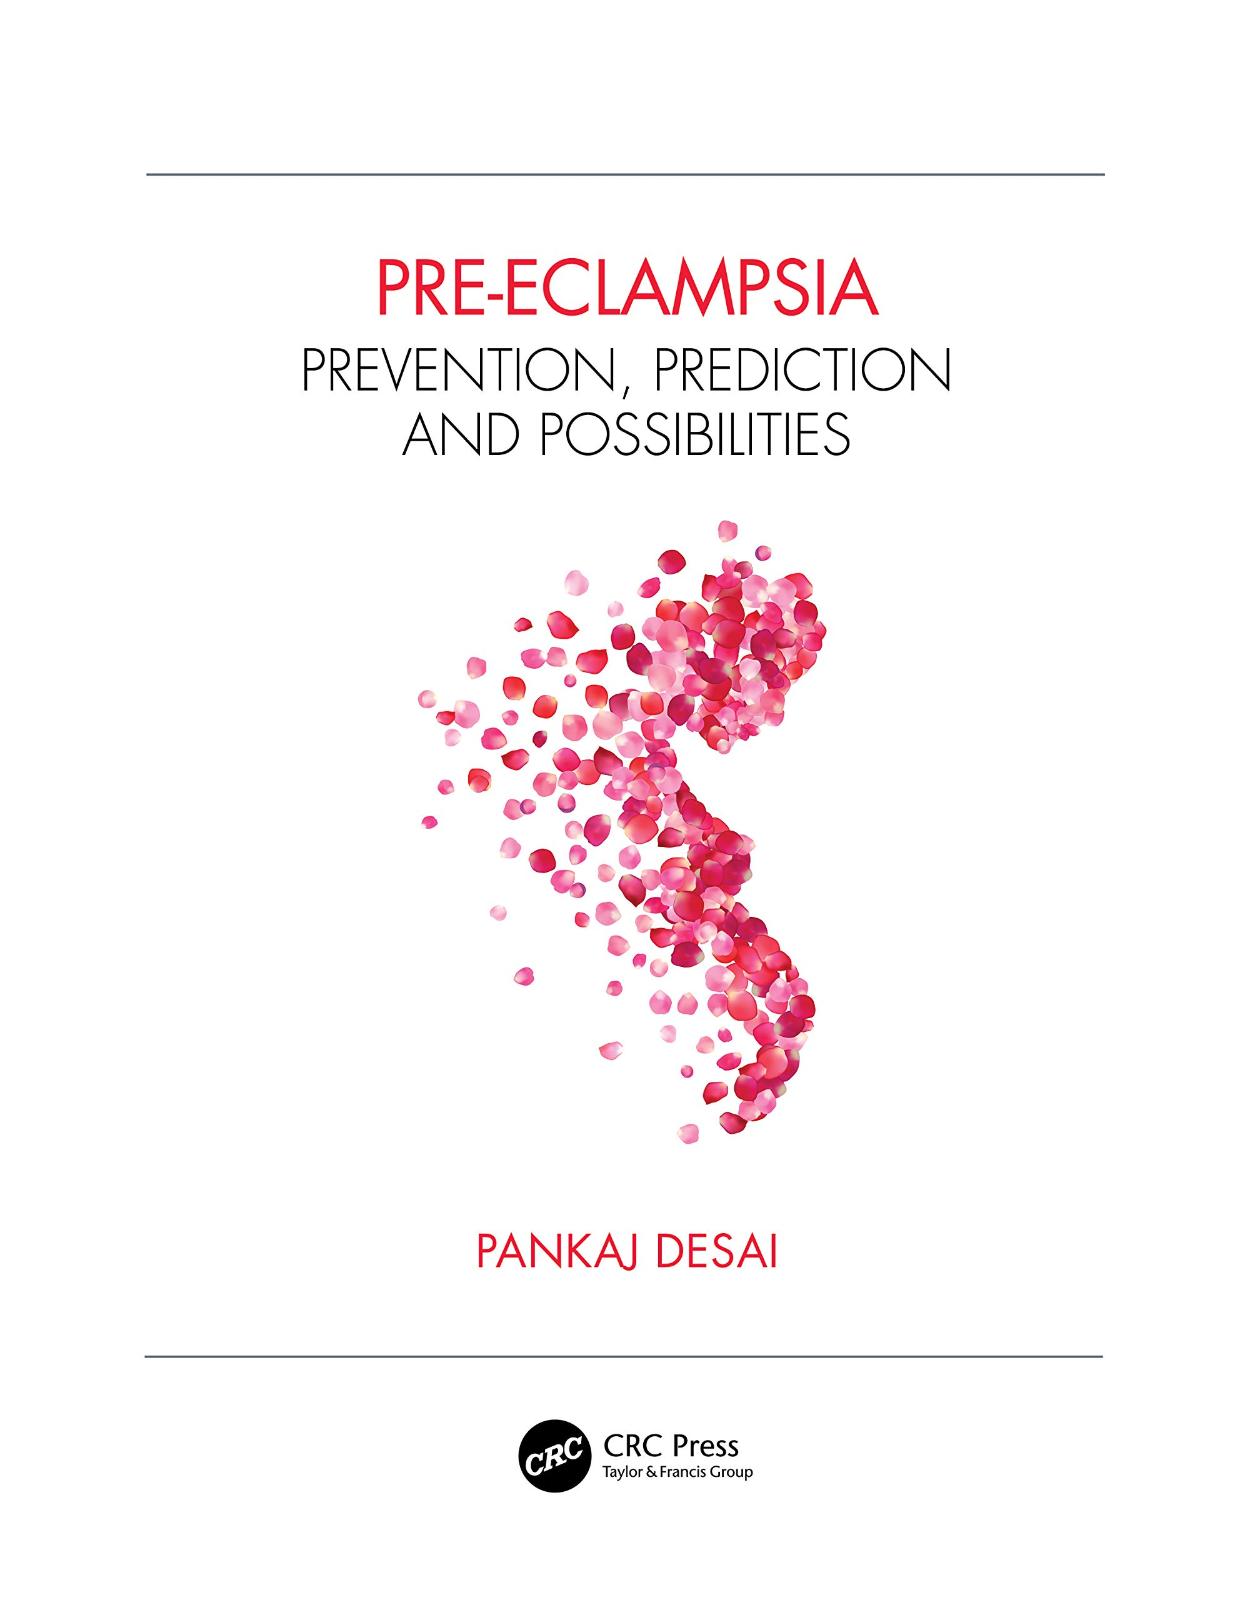 Pre-eclampsia: Prevention, Prediction and Possibilities